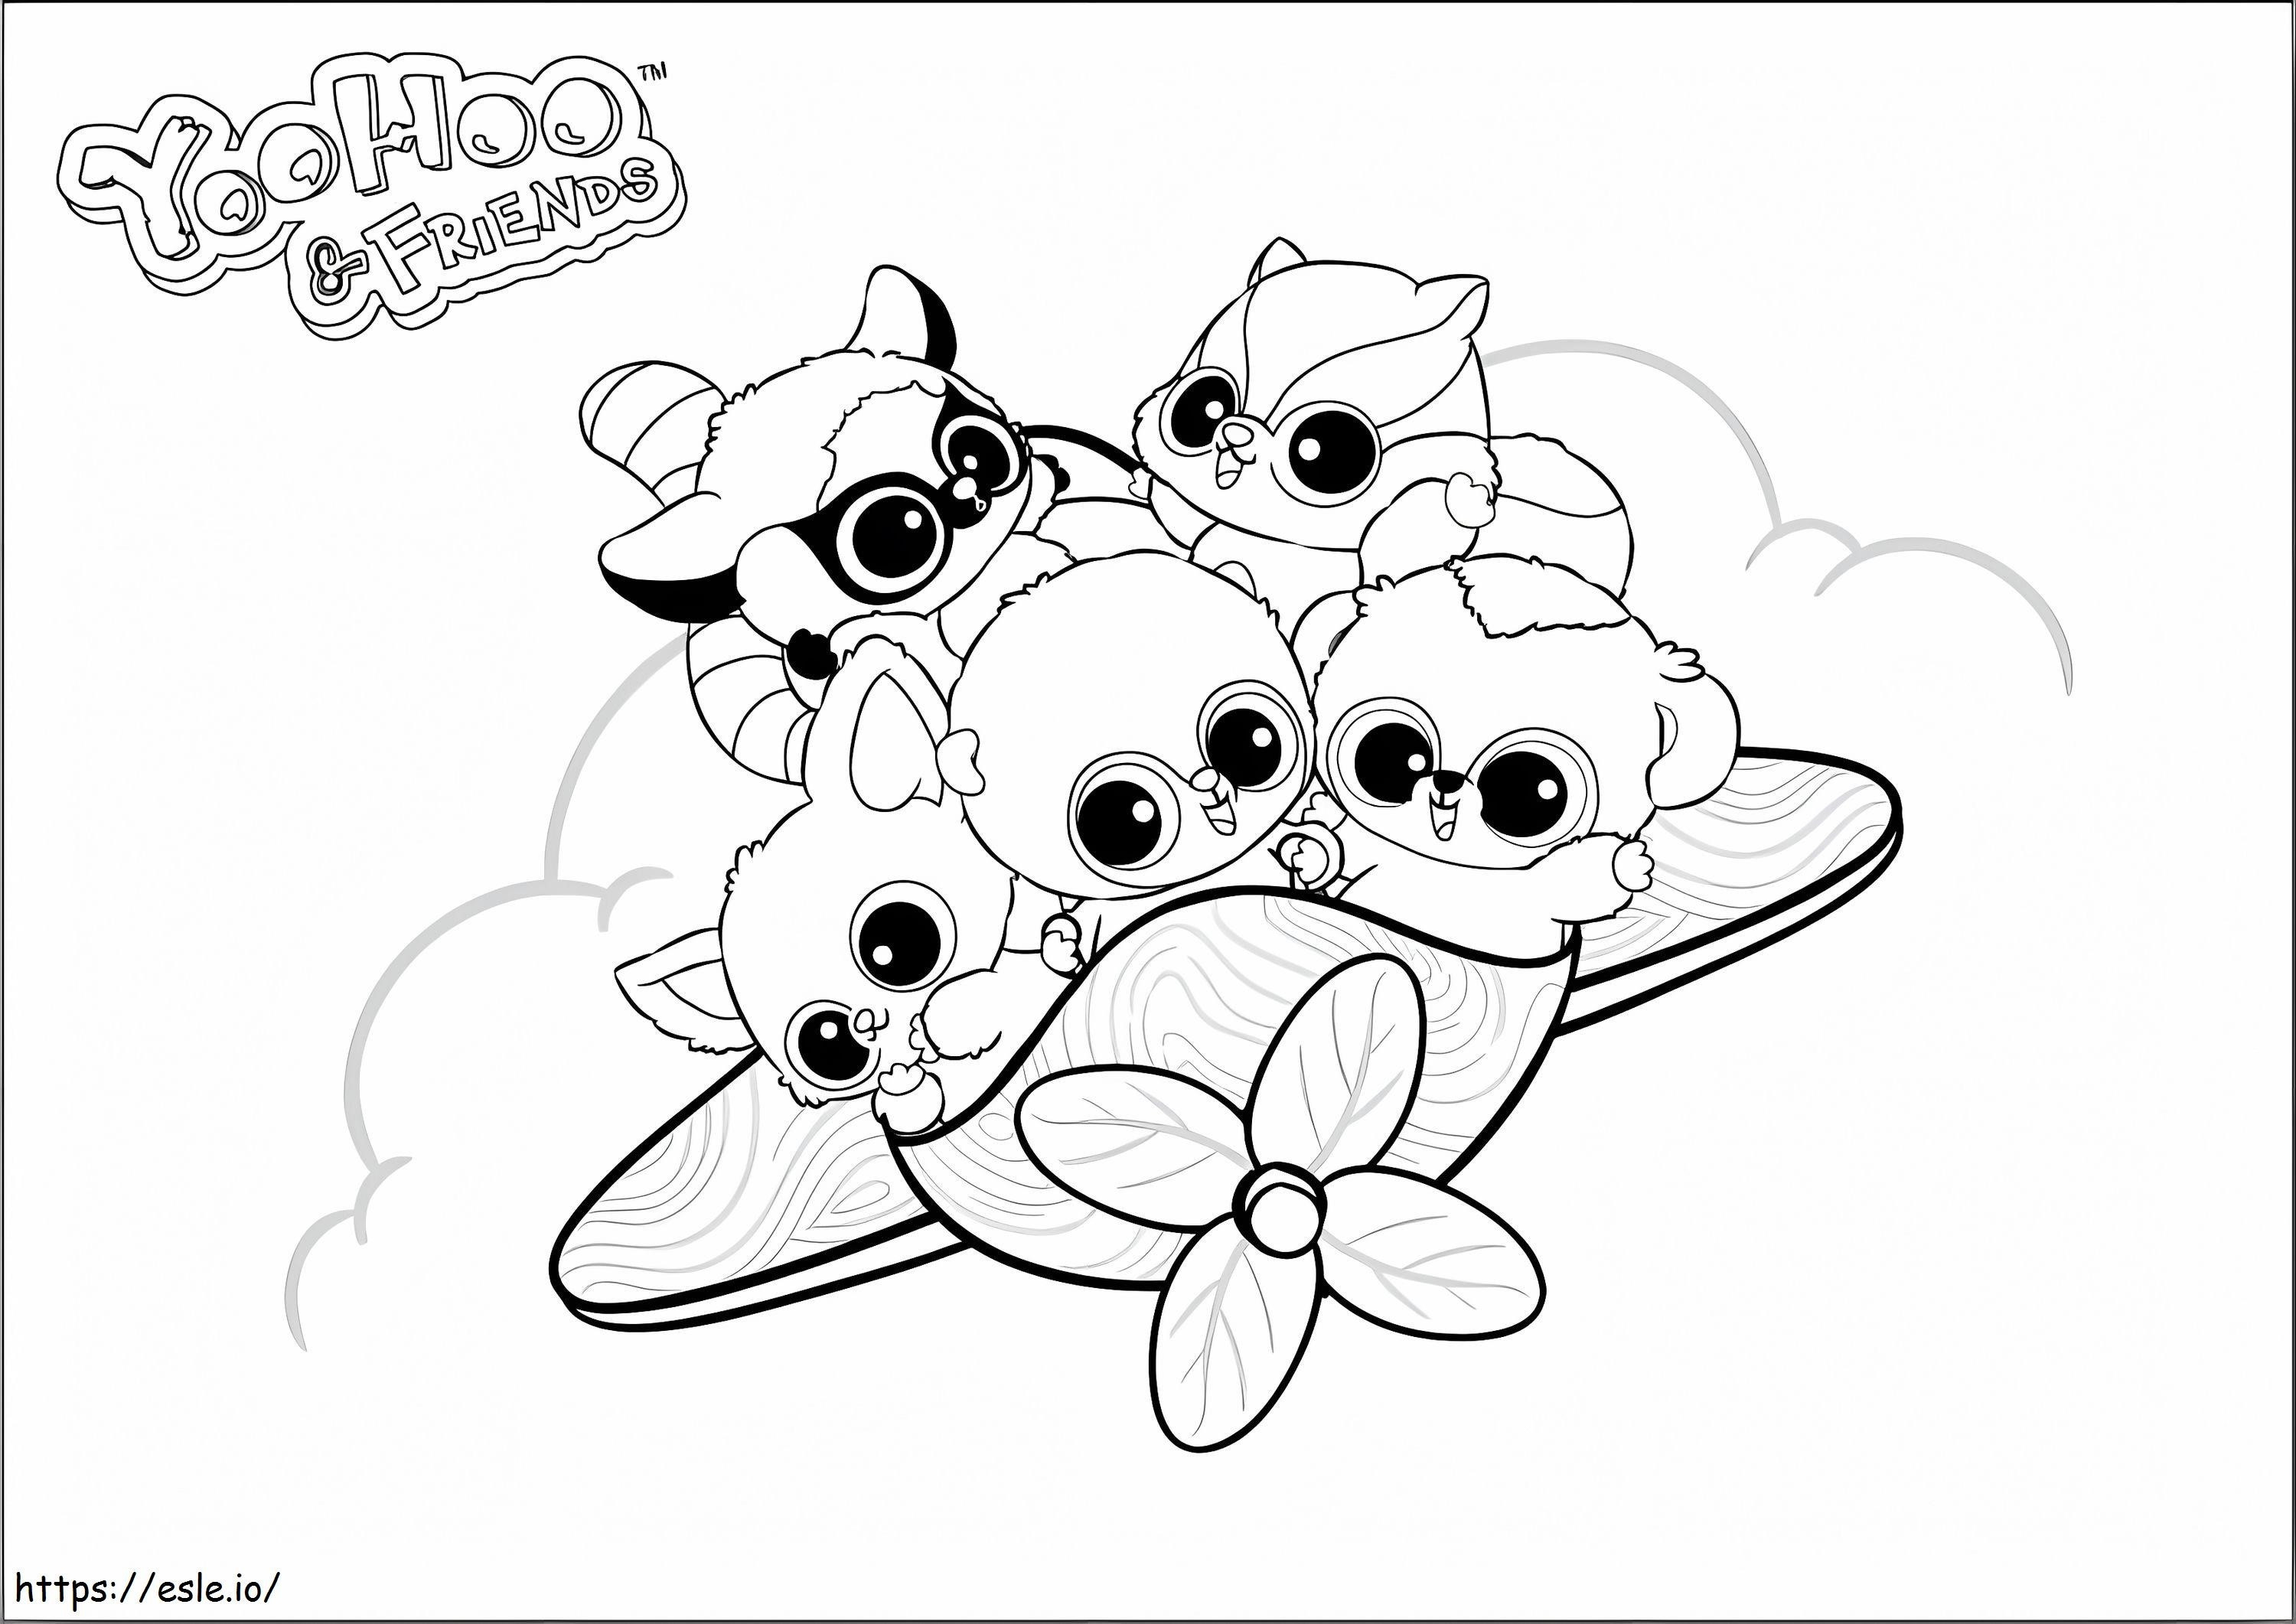 YooHoo e gli amici sull'aereo da colorare